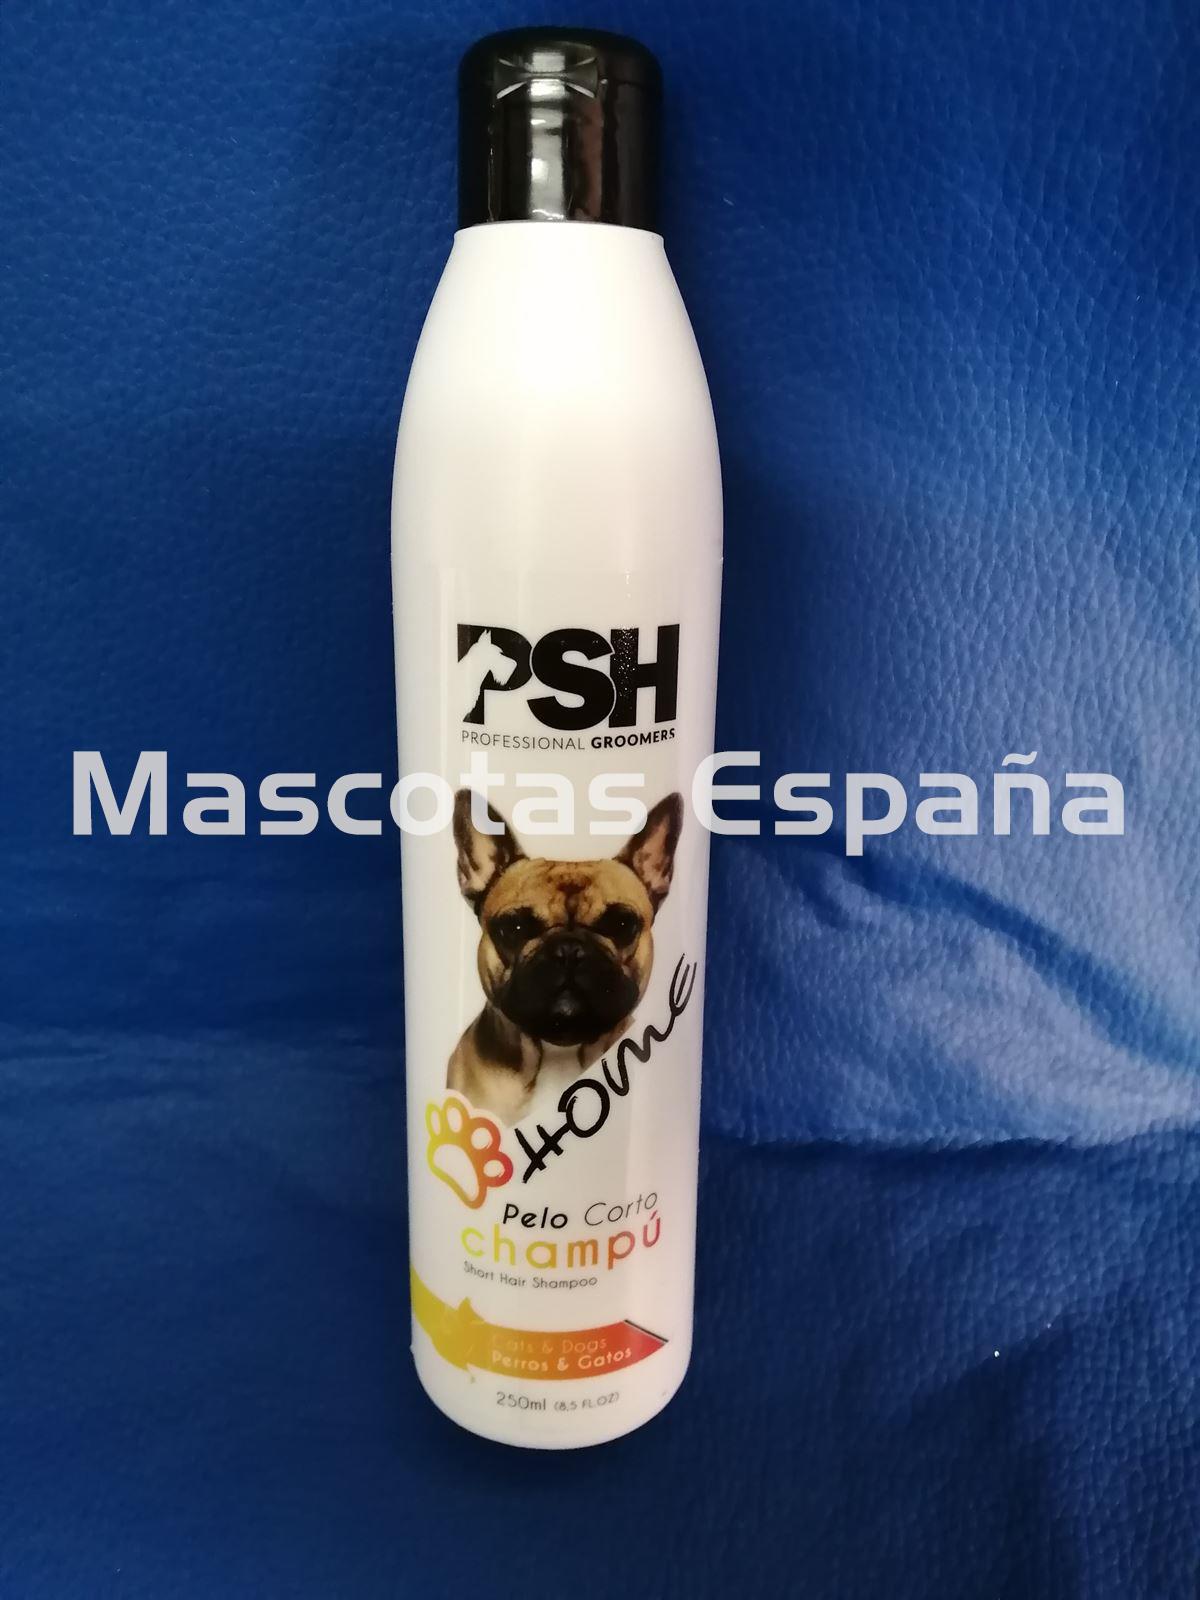 PSH HOME Pelo Corto Champú (Short Hair Shampoo) 250ml - Imagen 1